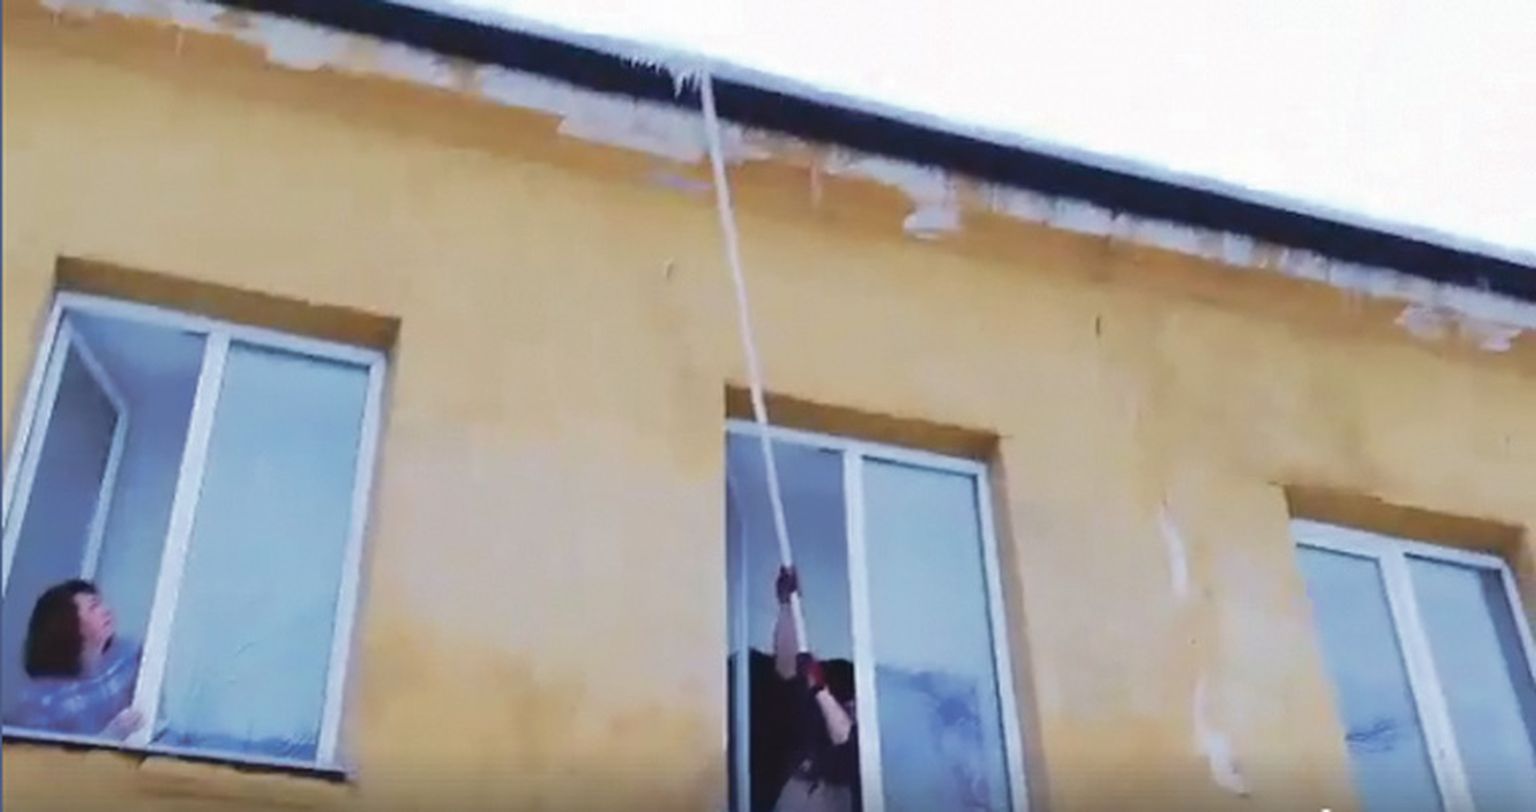 Кадр из видео, на котором видно, как работник, стоя у окна, пытается сбить длинной палкой сосульки с края крыши. Из соседнего окна за его действиями наблюдает директор школы Юлия Каламаева.